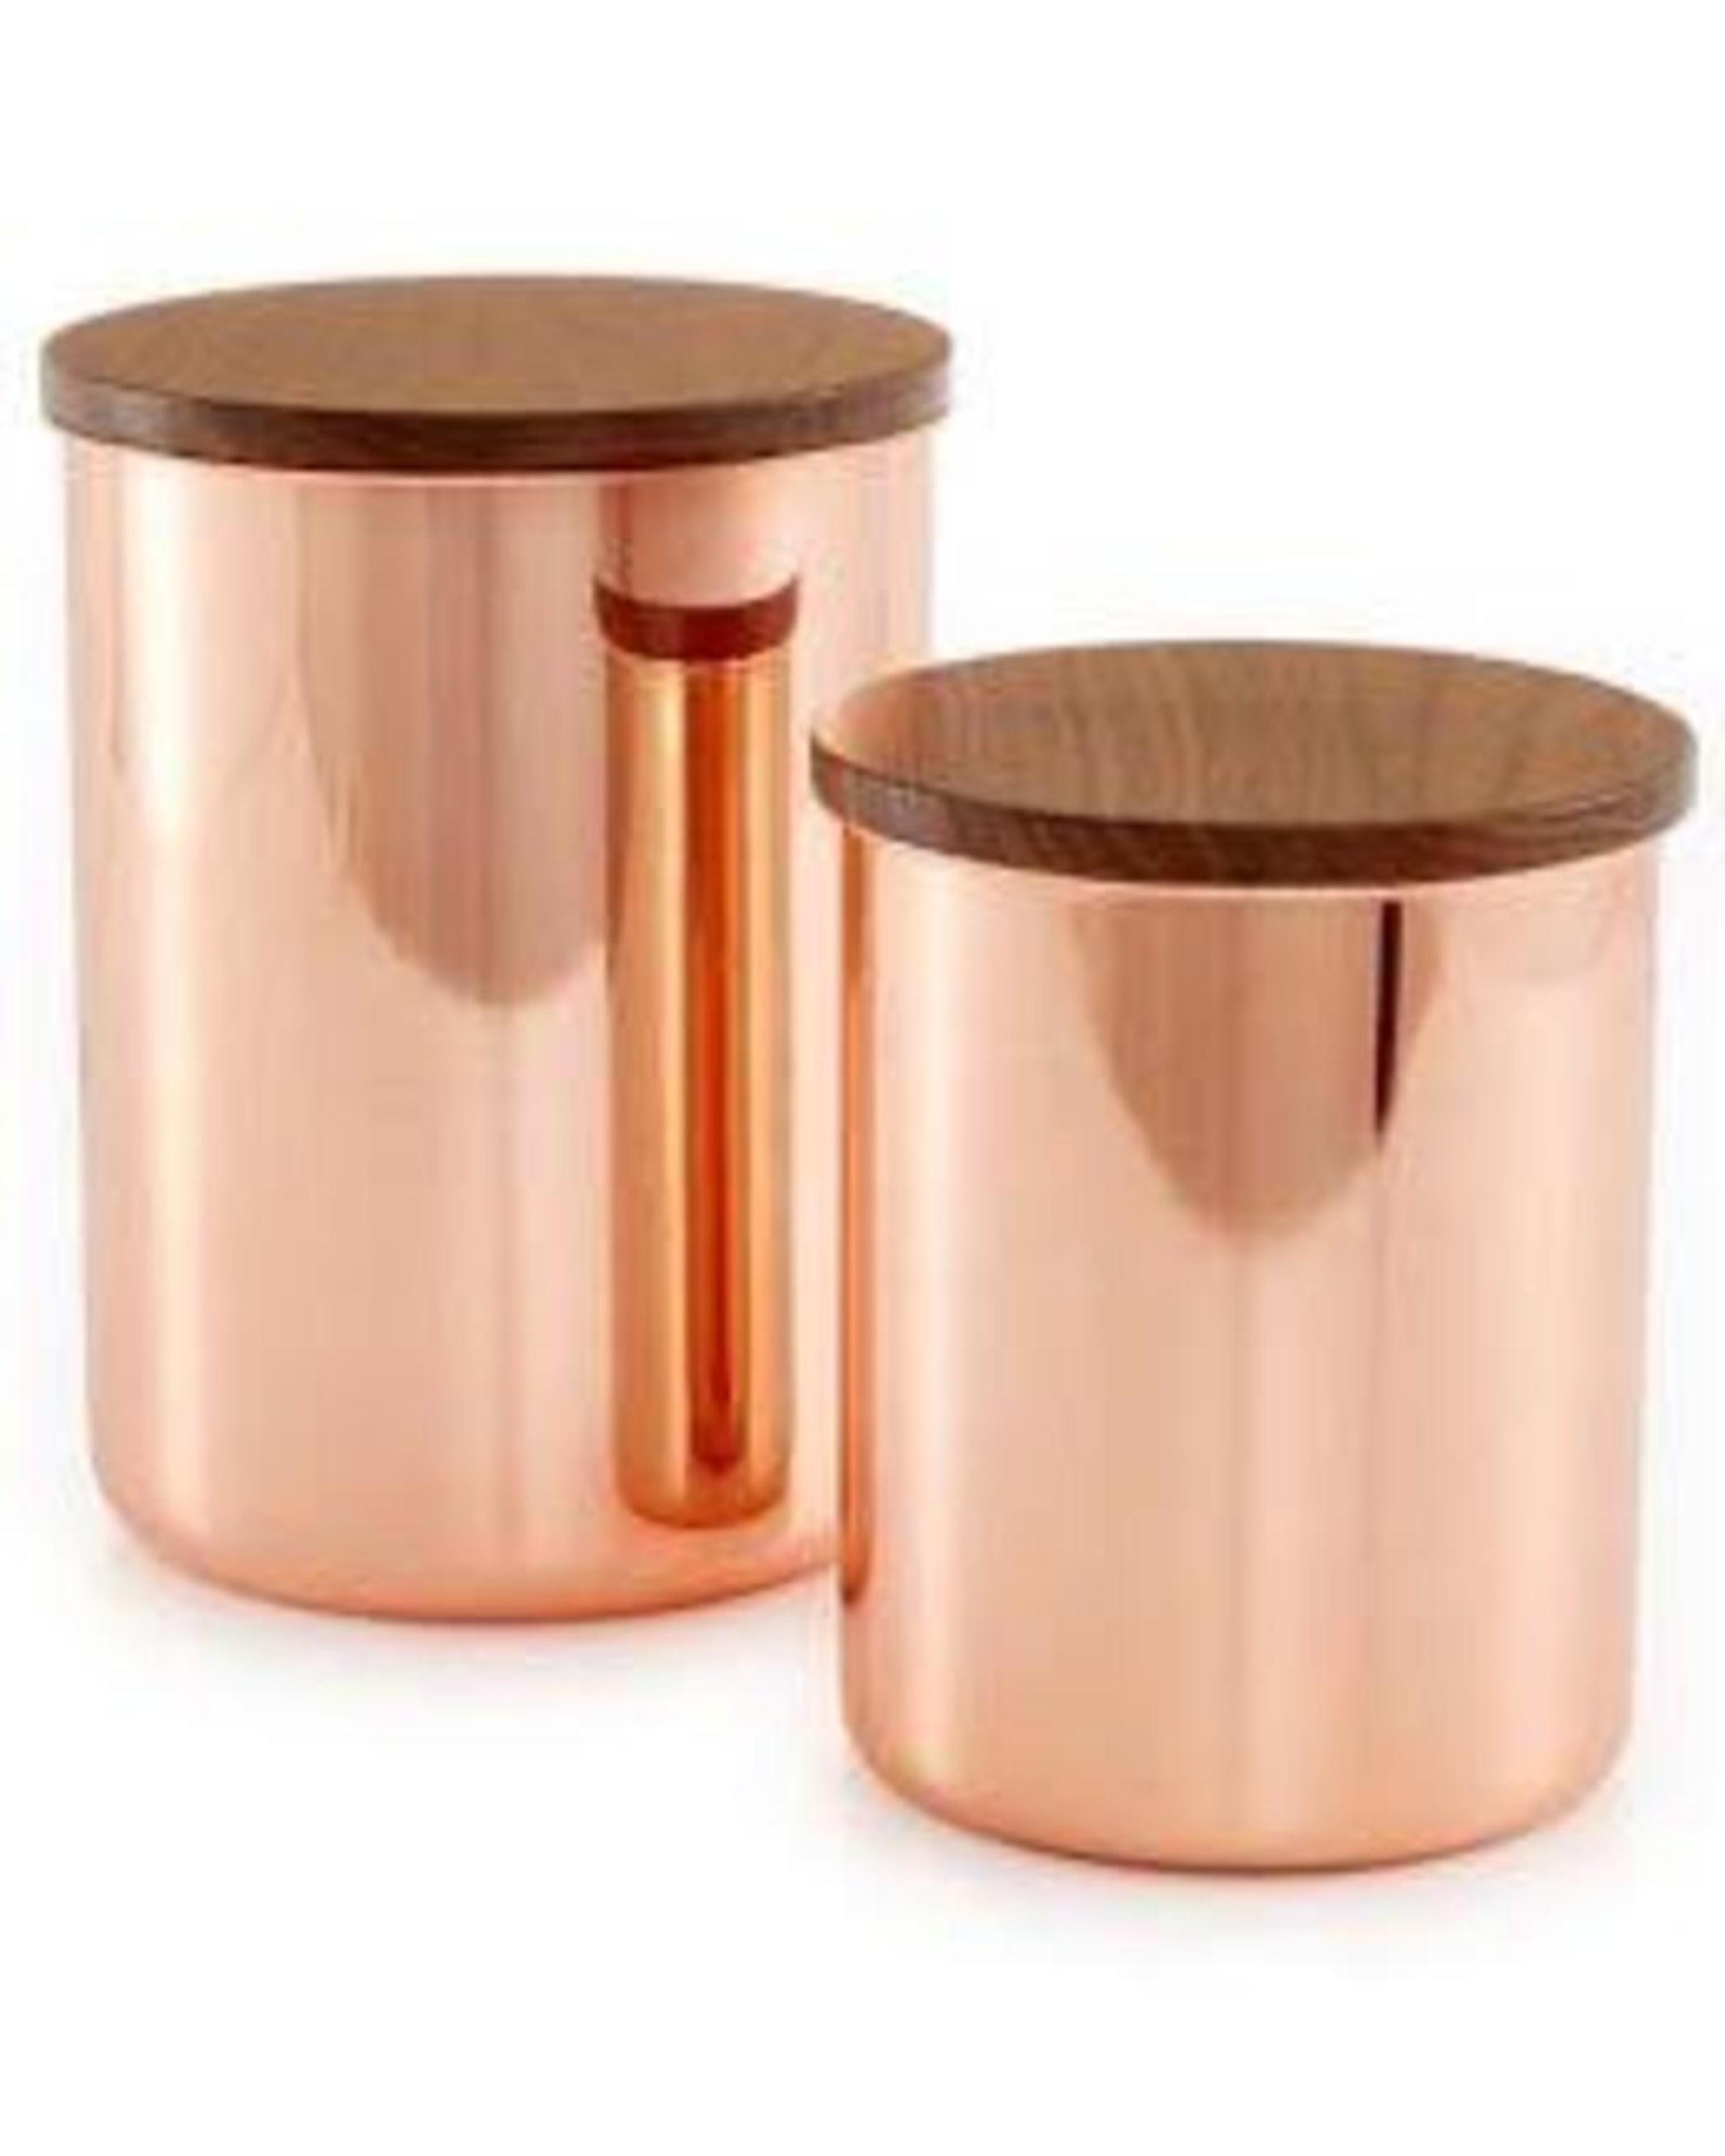 Round Copper Kitchen Storage Server Ware